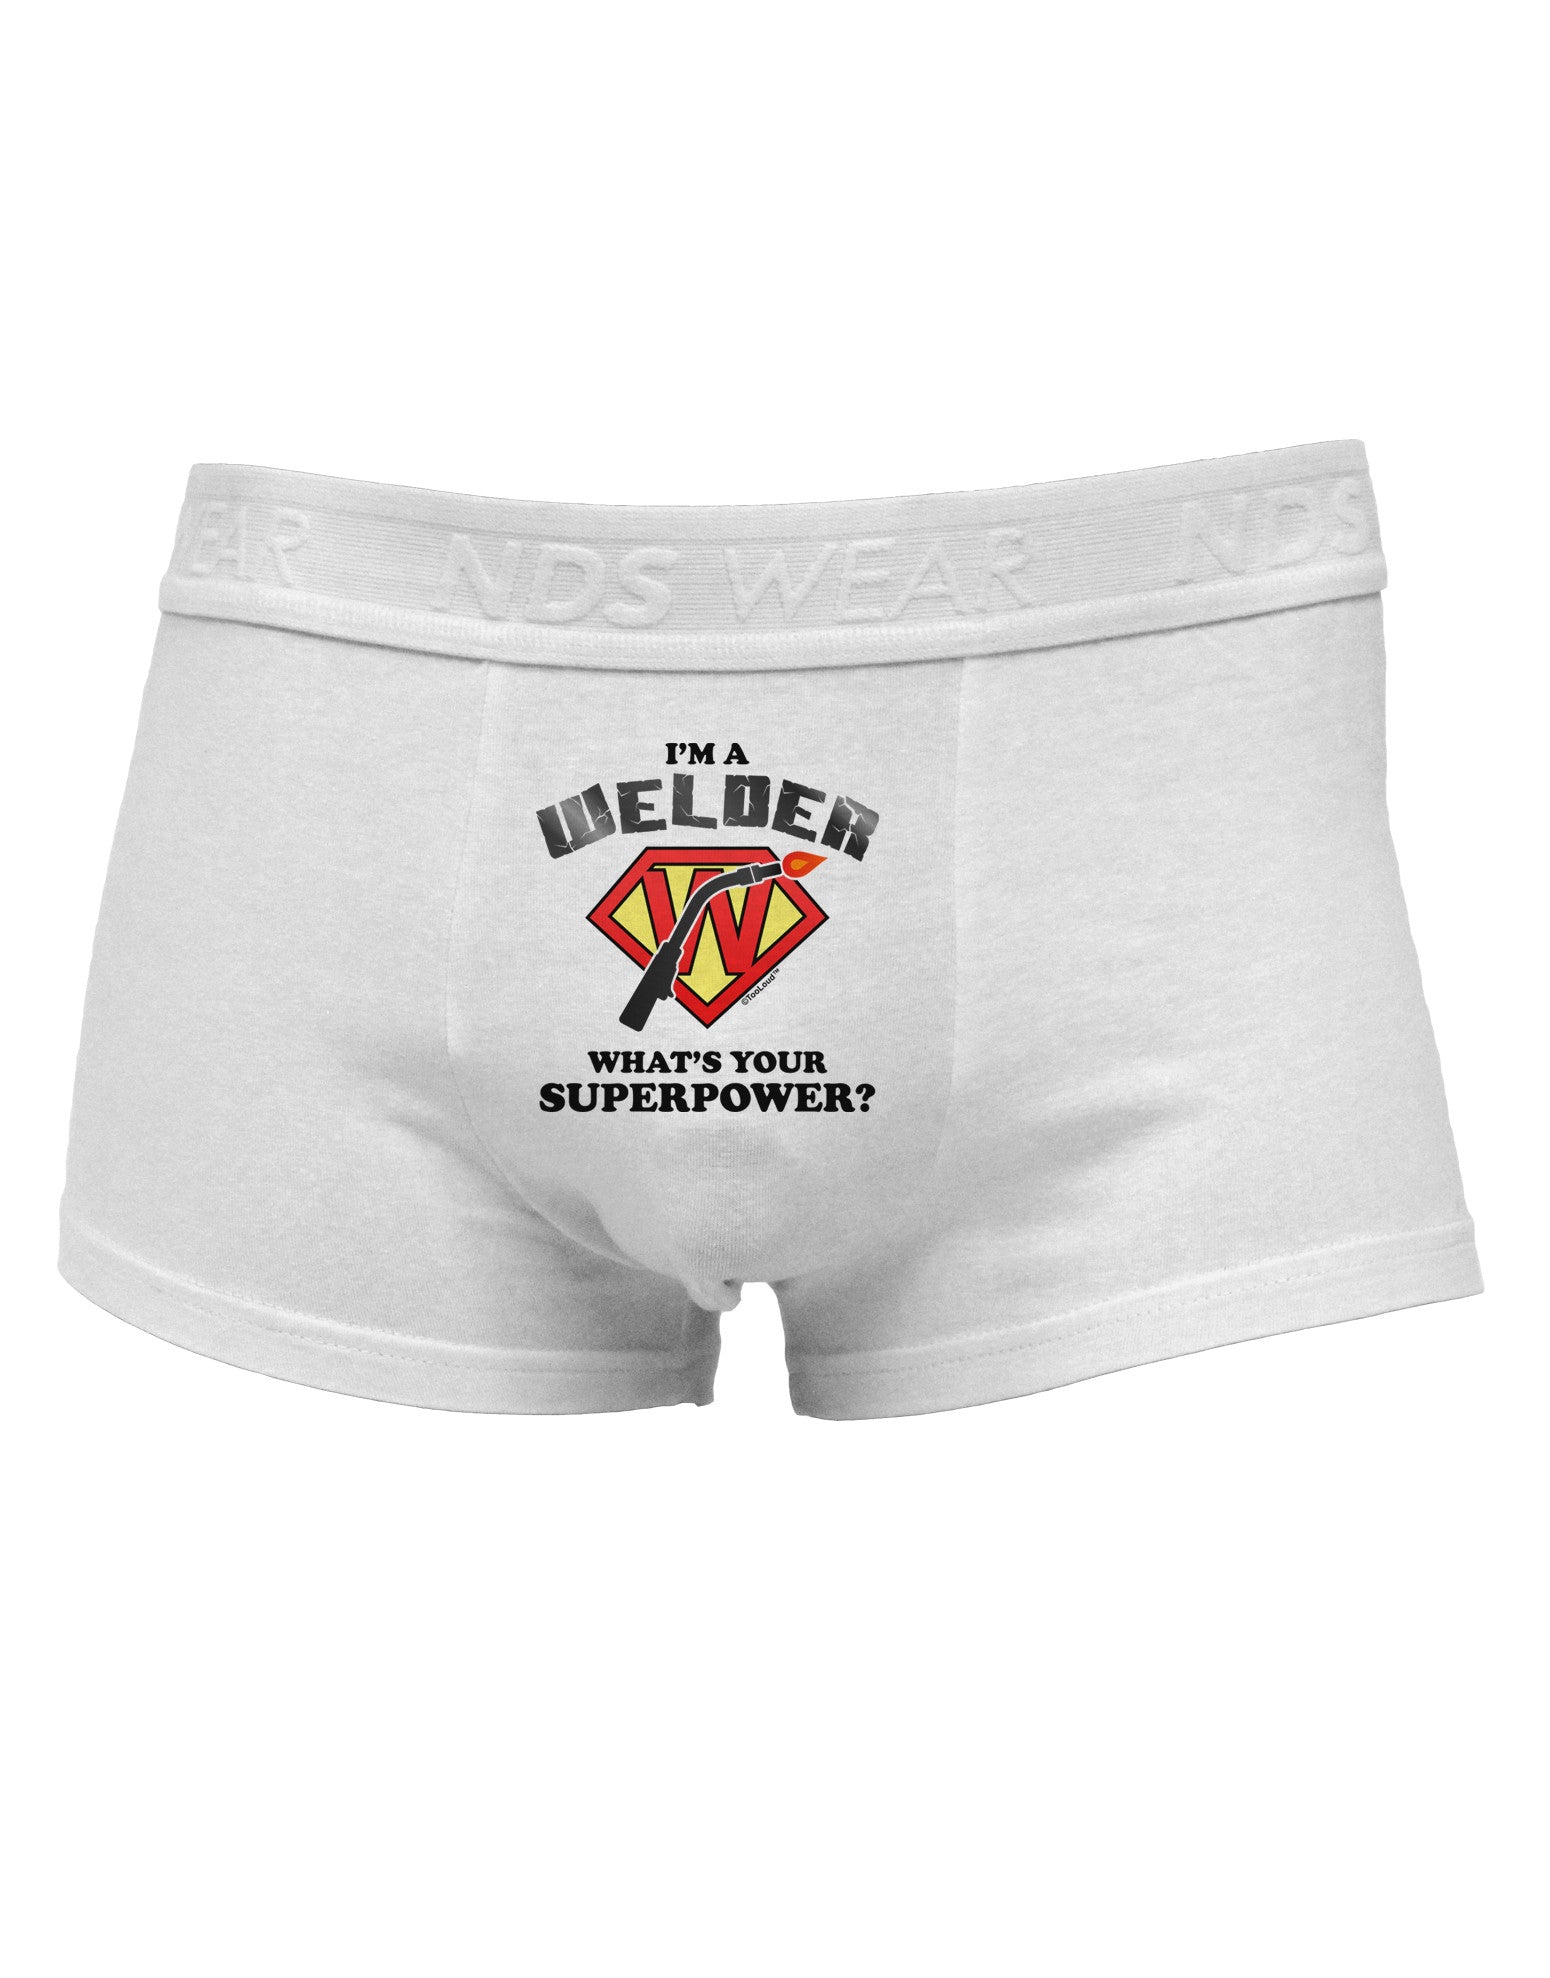 Welder - Superpower Mens Cotton Trunk Underwear - Davson Sales